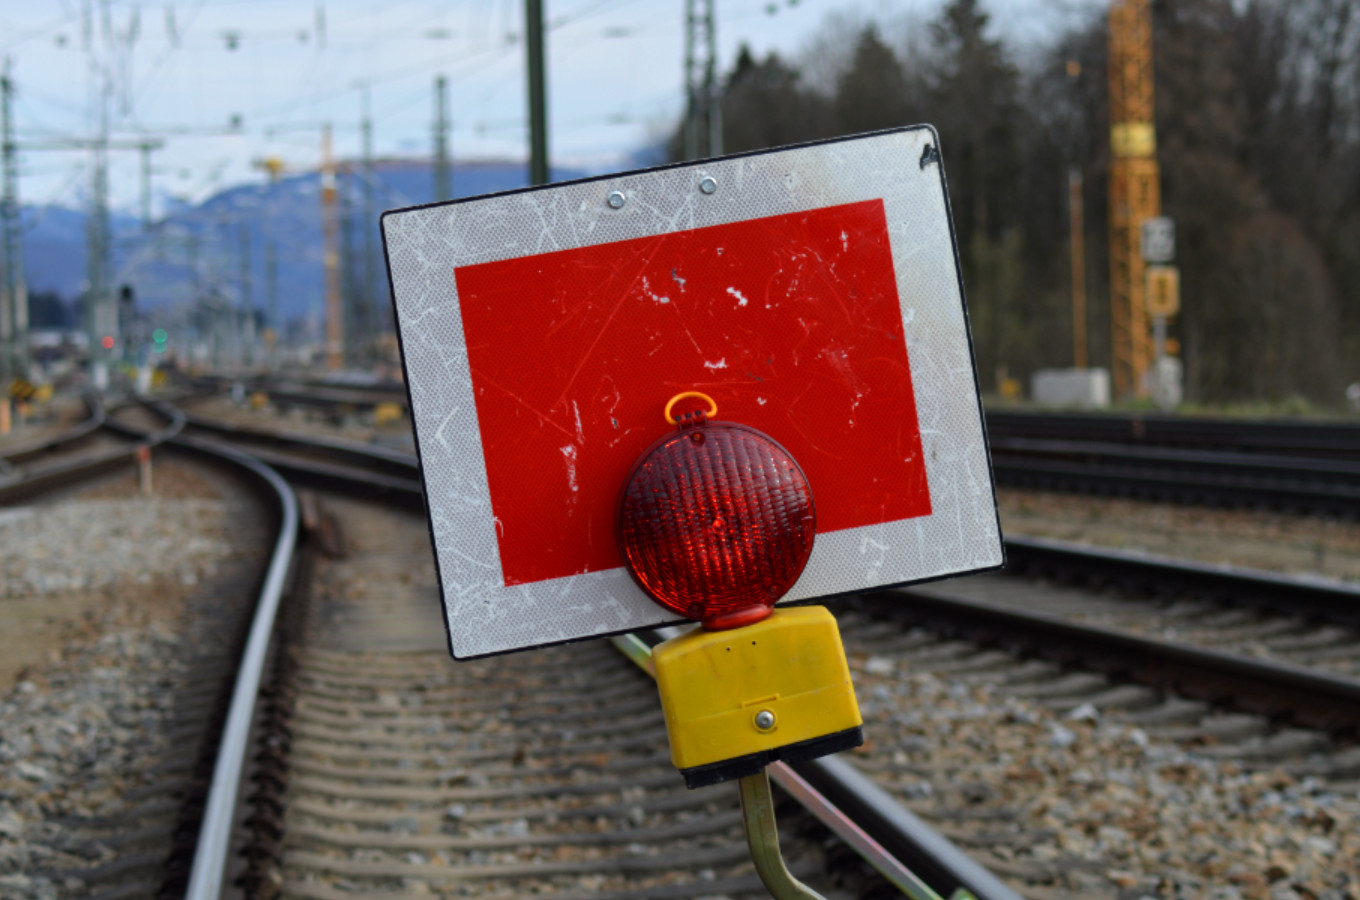 Schutzhalttafel (Signal Sh 2) in einem gesperrten Baugleis. (Foto: © Bahnblogstelle)